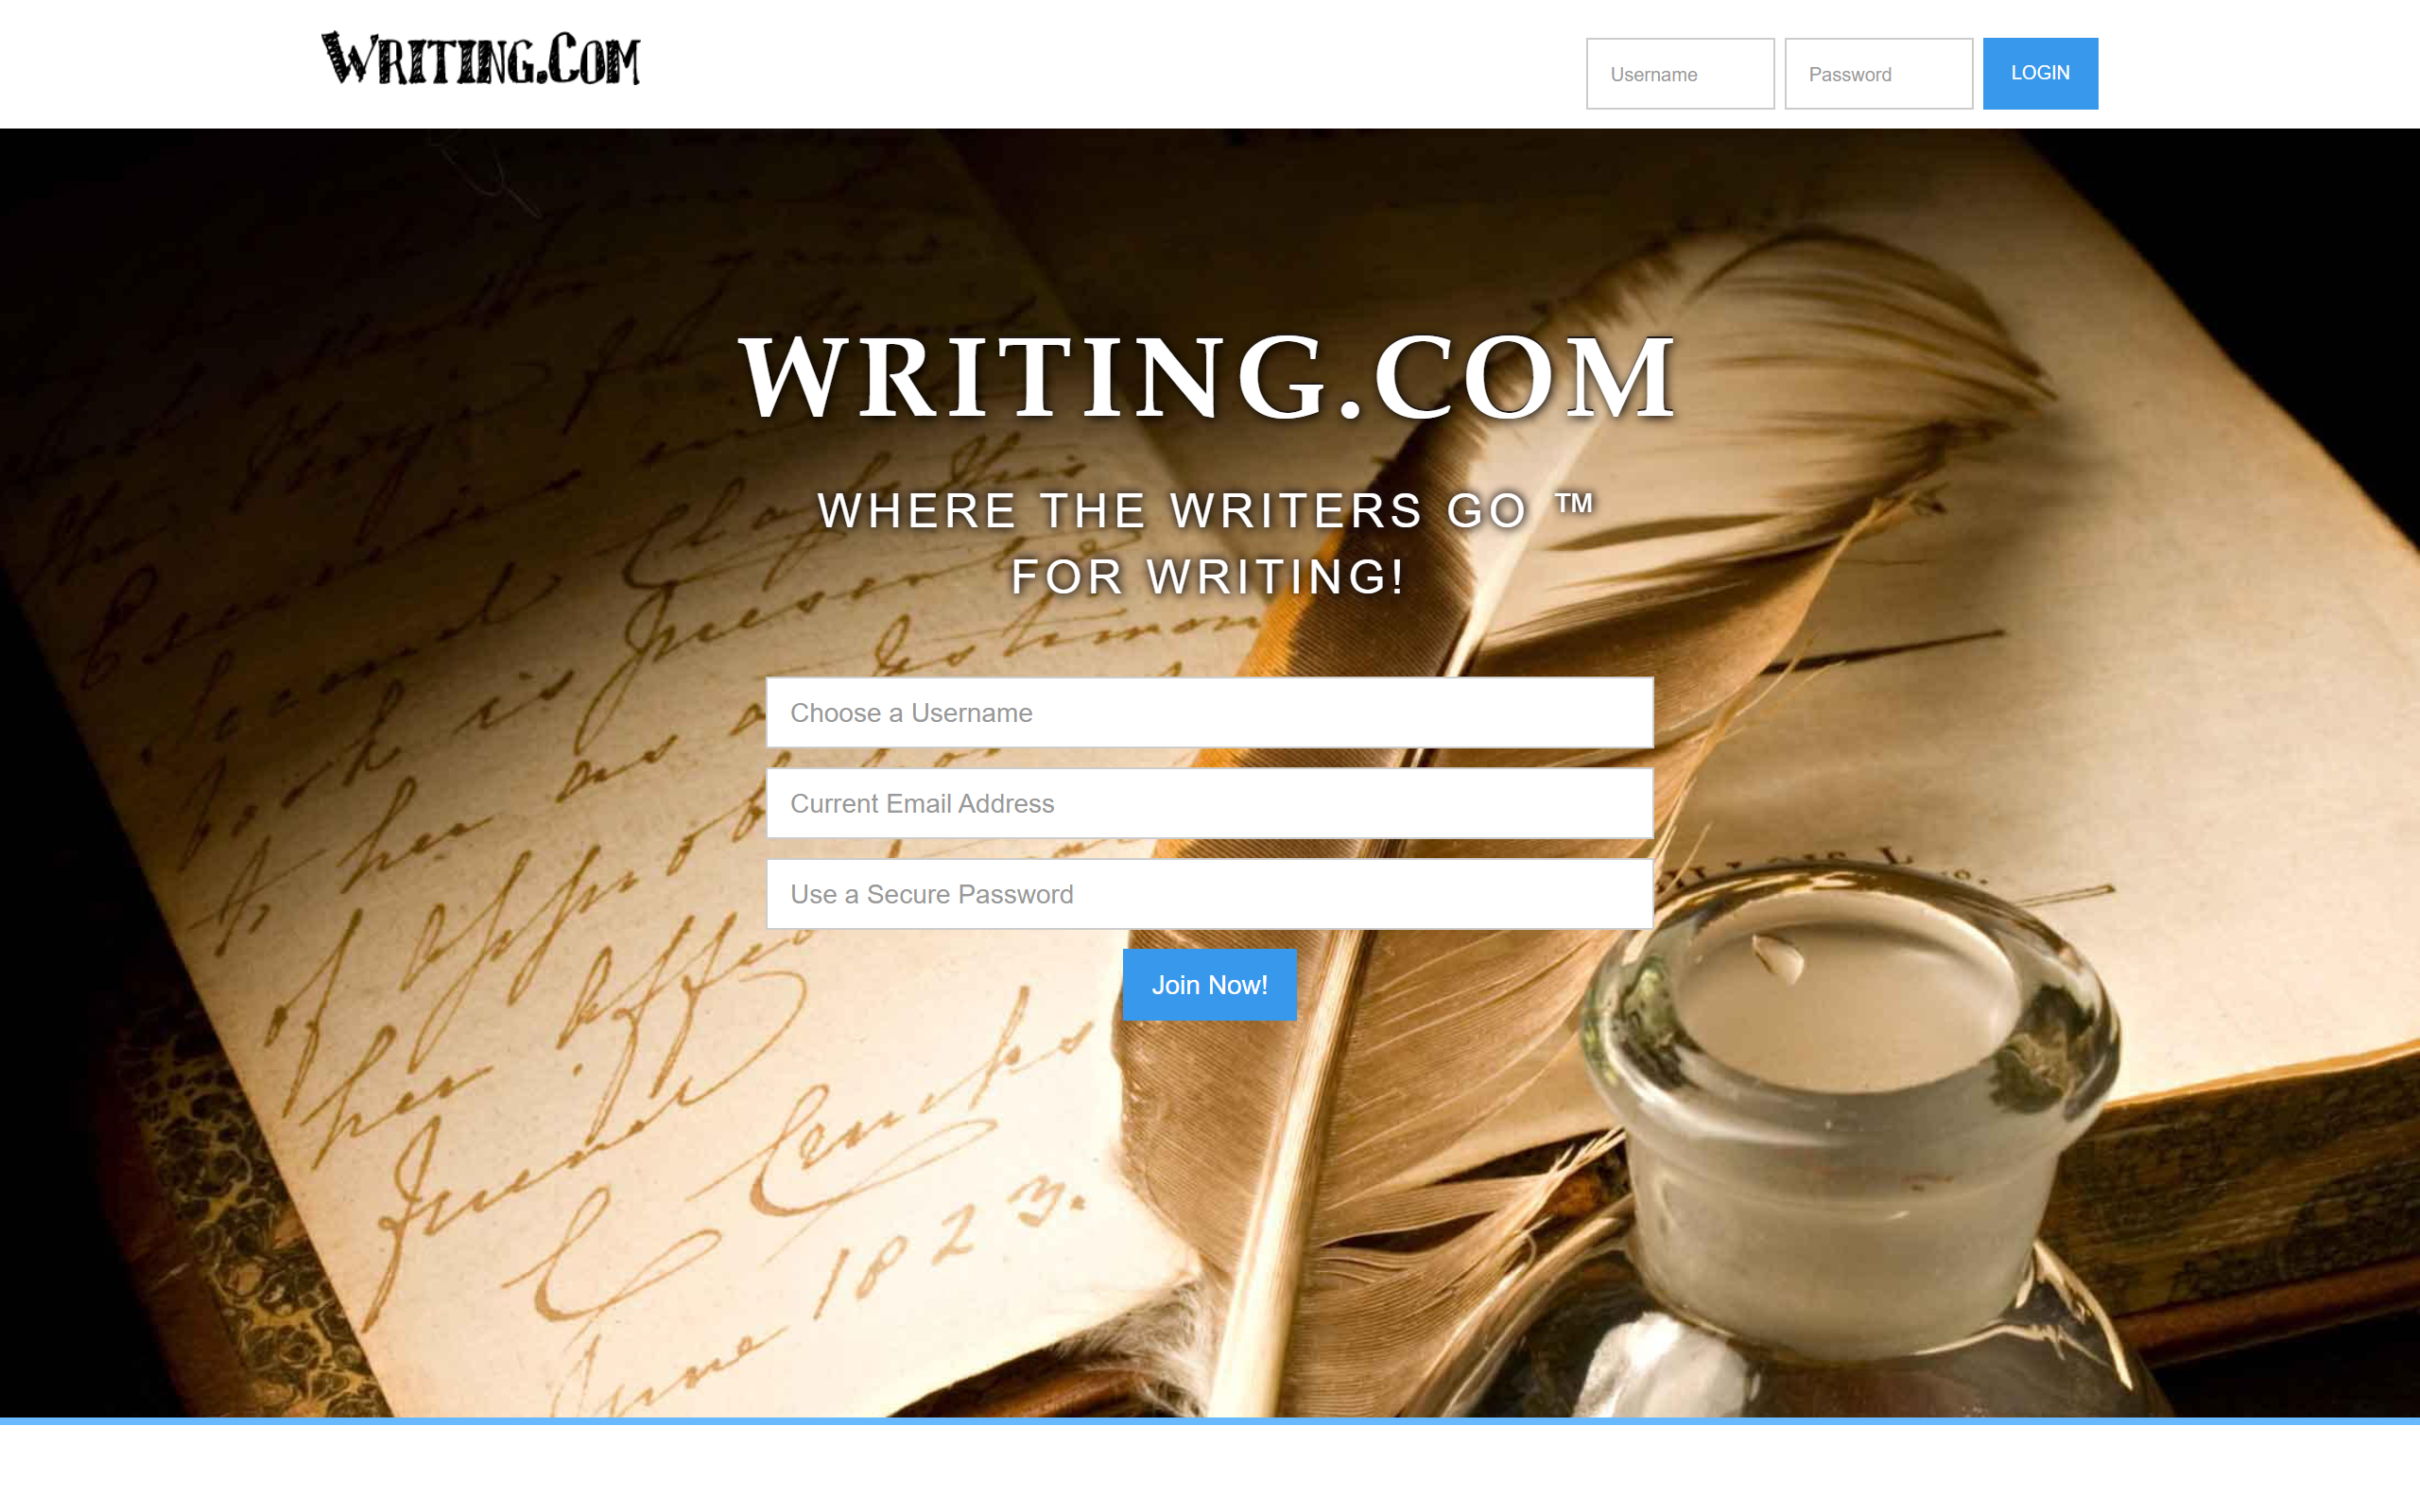 Writing.com Websites for Writers